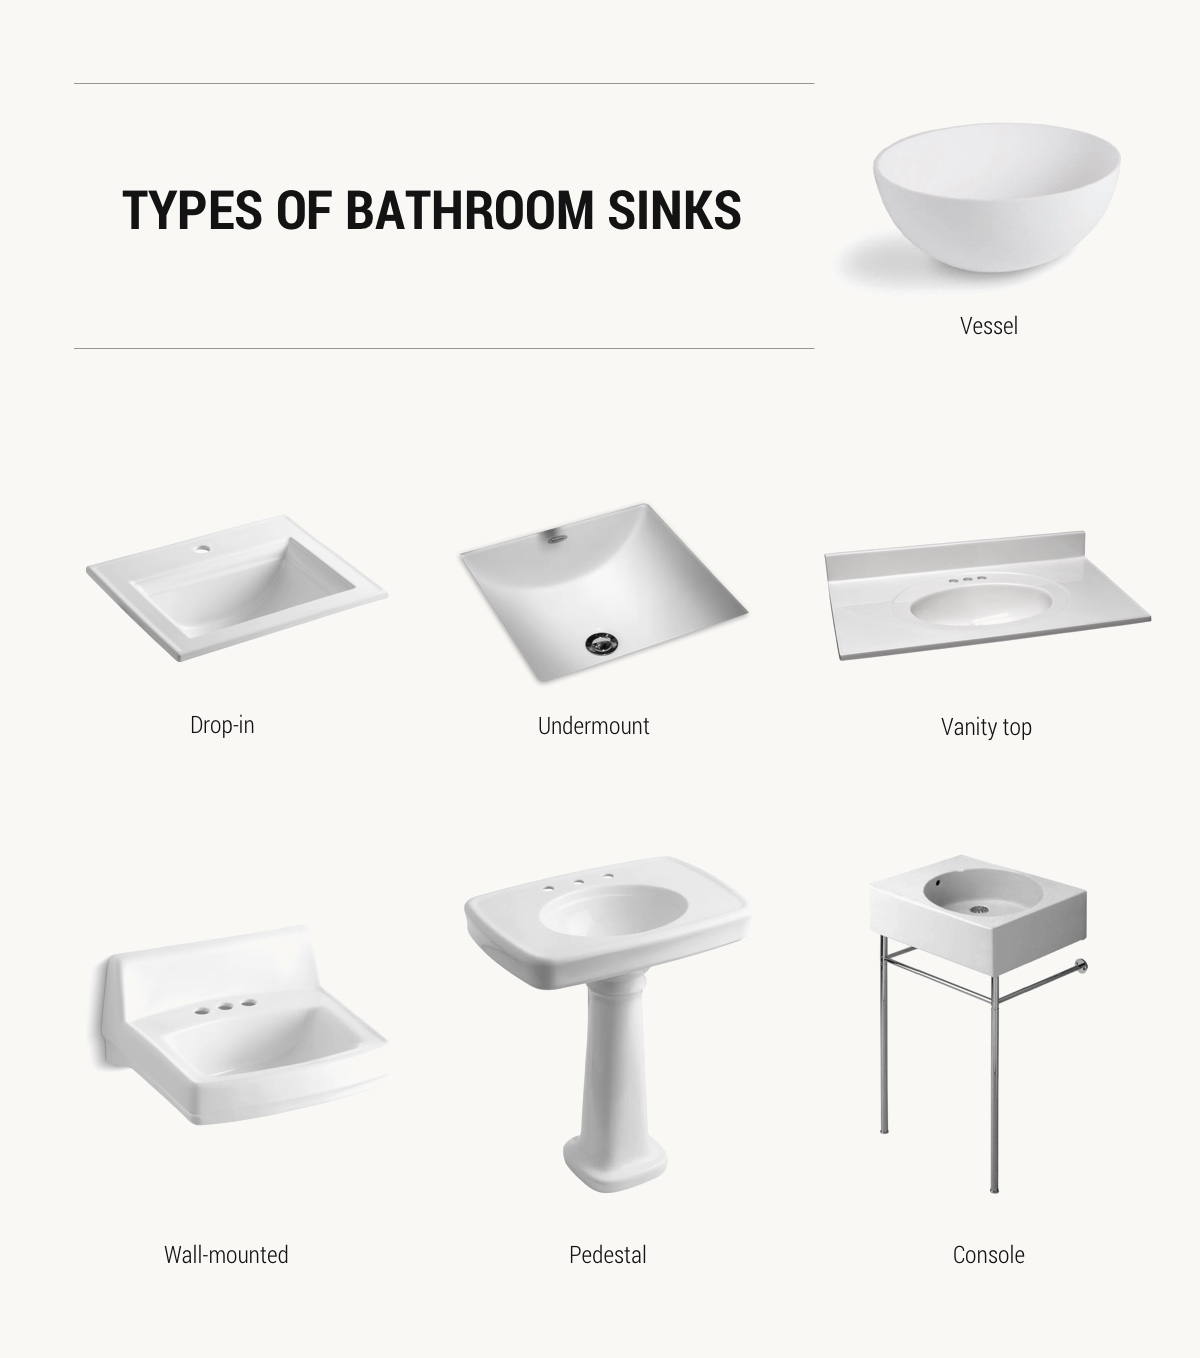 51 Bathroom Sinks That Are Overflowing, Best Type Of Vanity Top For Bathroom